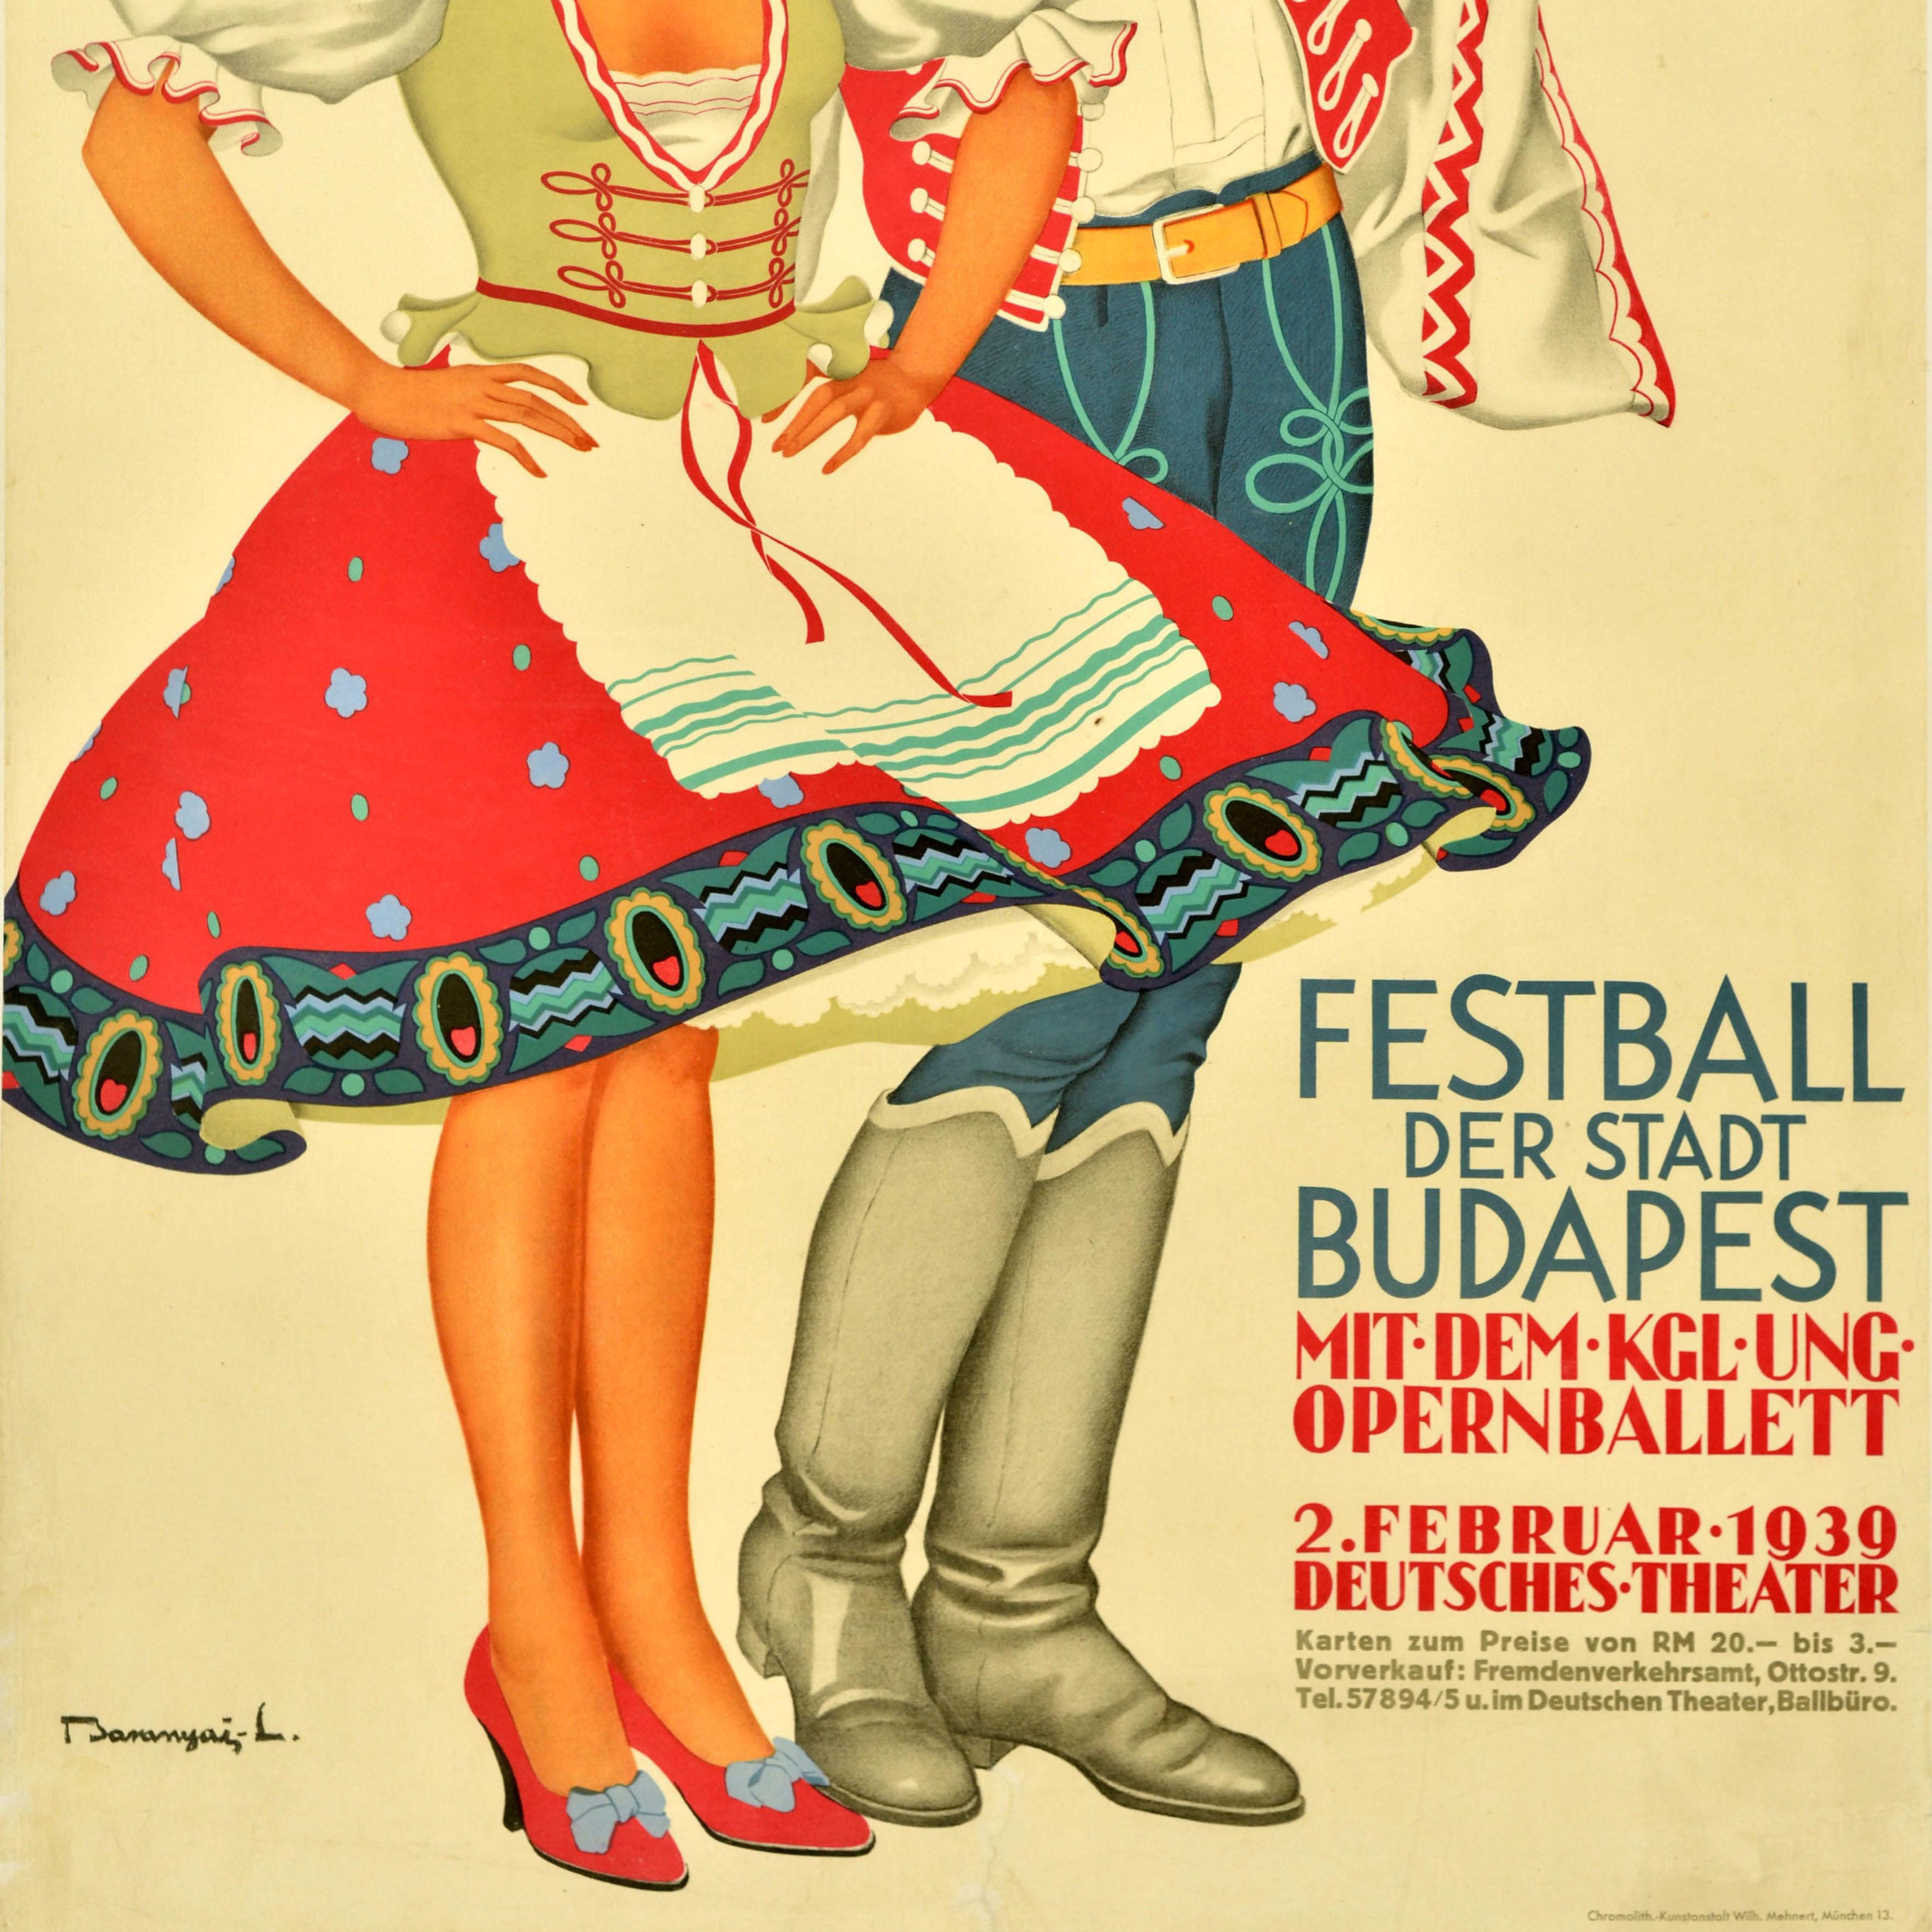 Originales Vintage-Reiseplakat für das Budapester Stadtfest mit Opernballett am 2. Februar 1939 im Deutschen Theater - Festball der Stadt Budapest mit dem Kgl. Ung. Opernballett Deutsches Theater - mit einer farbenfrohen Illustration zweier Tänzer